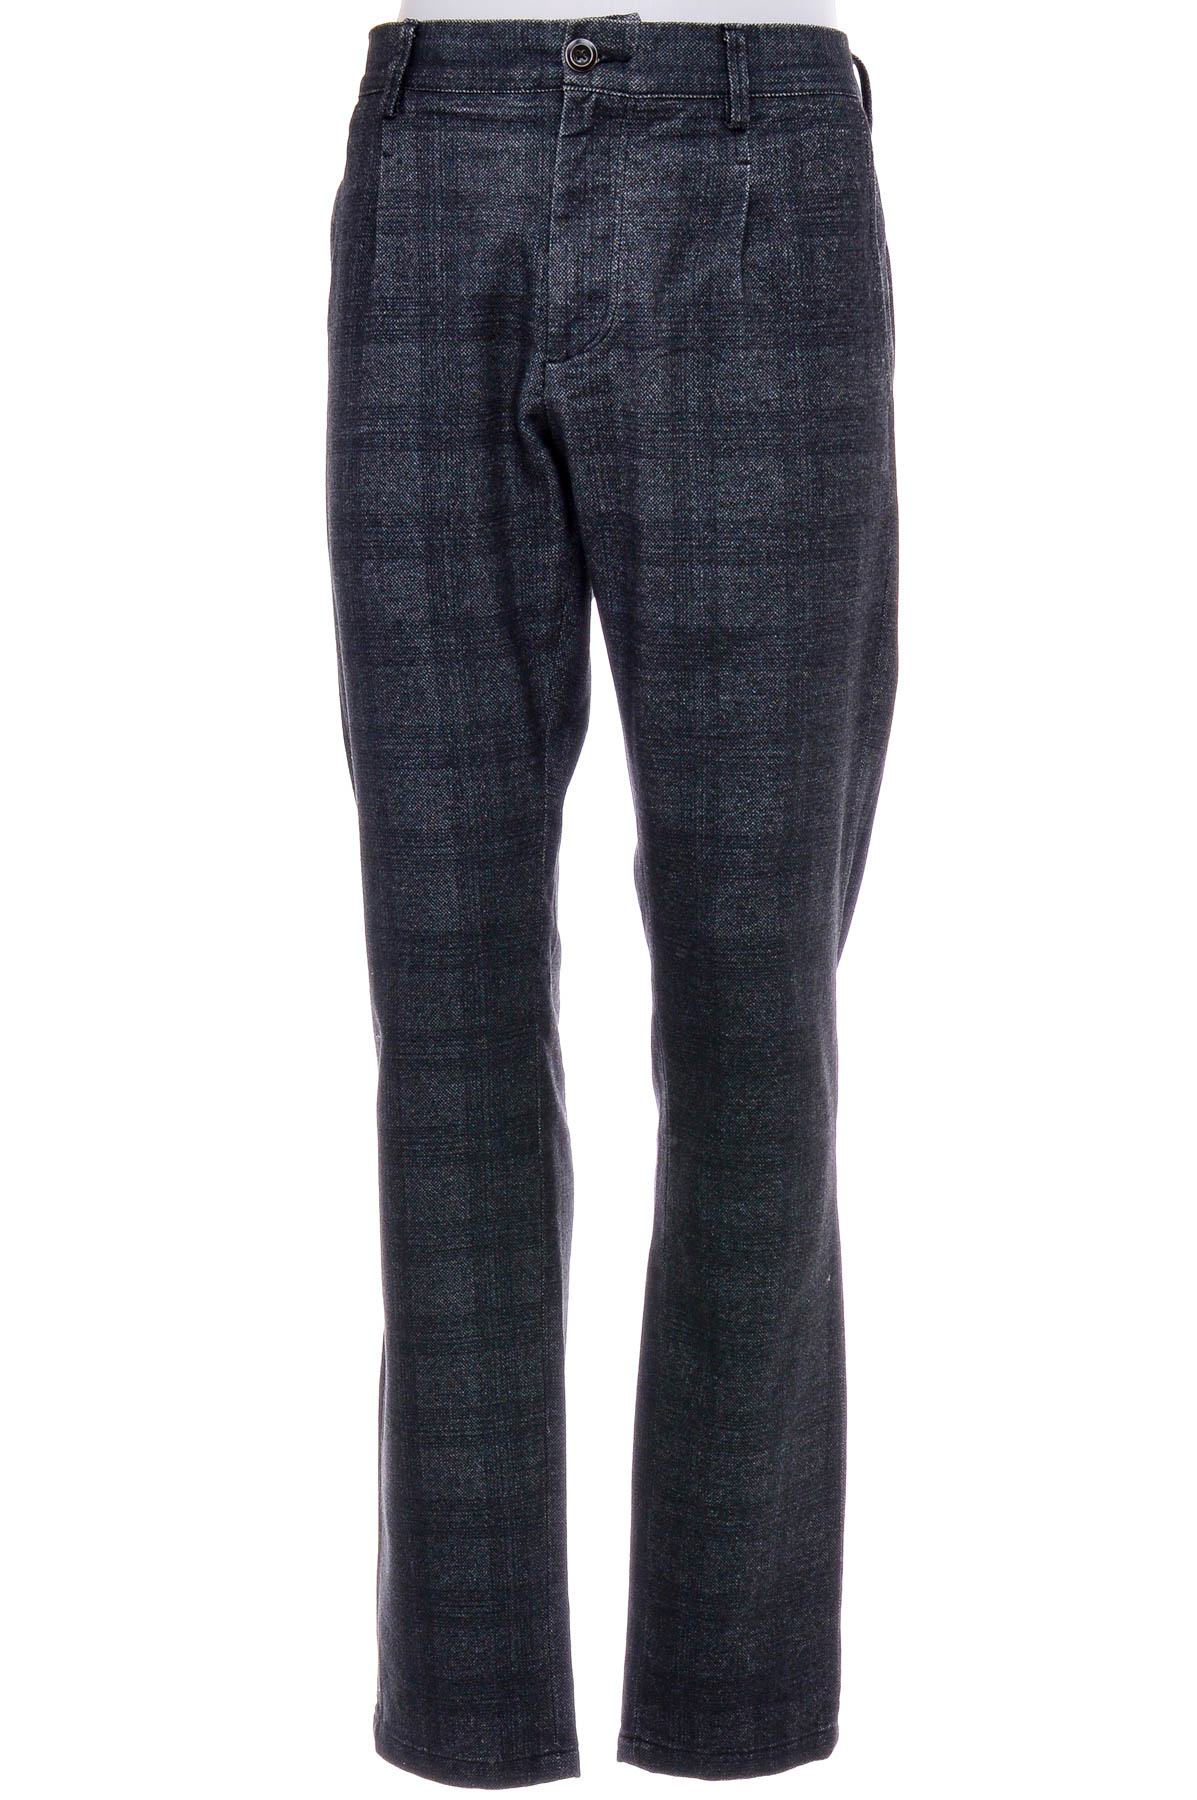 Pantalon pentru bărbați - DEVRED 1902 - 0